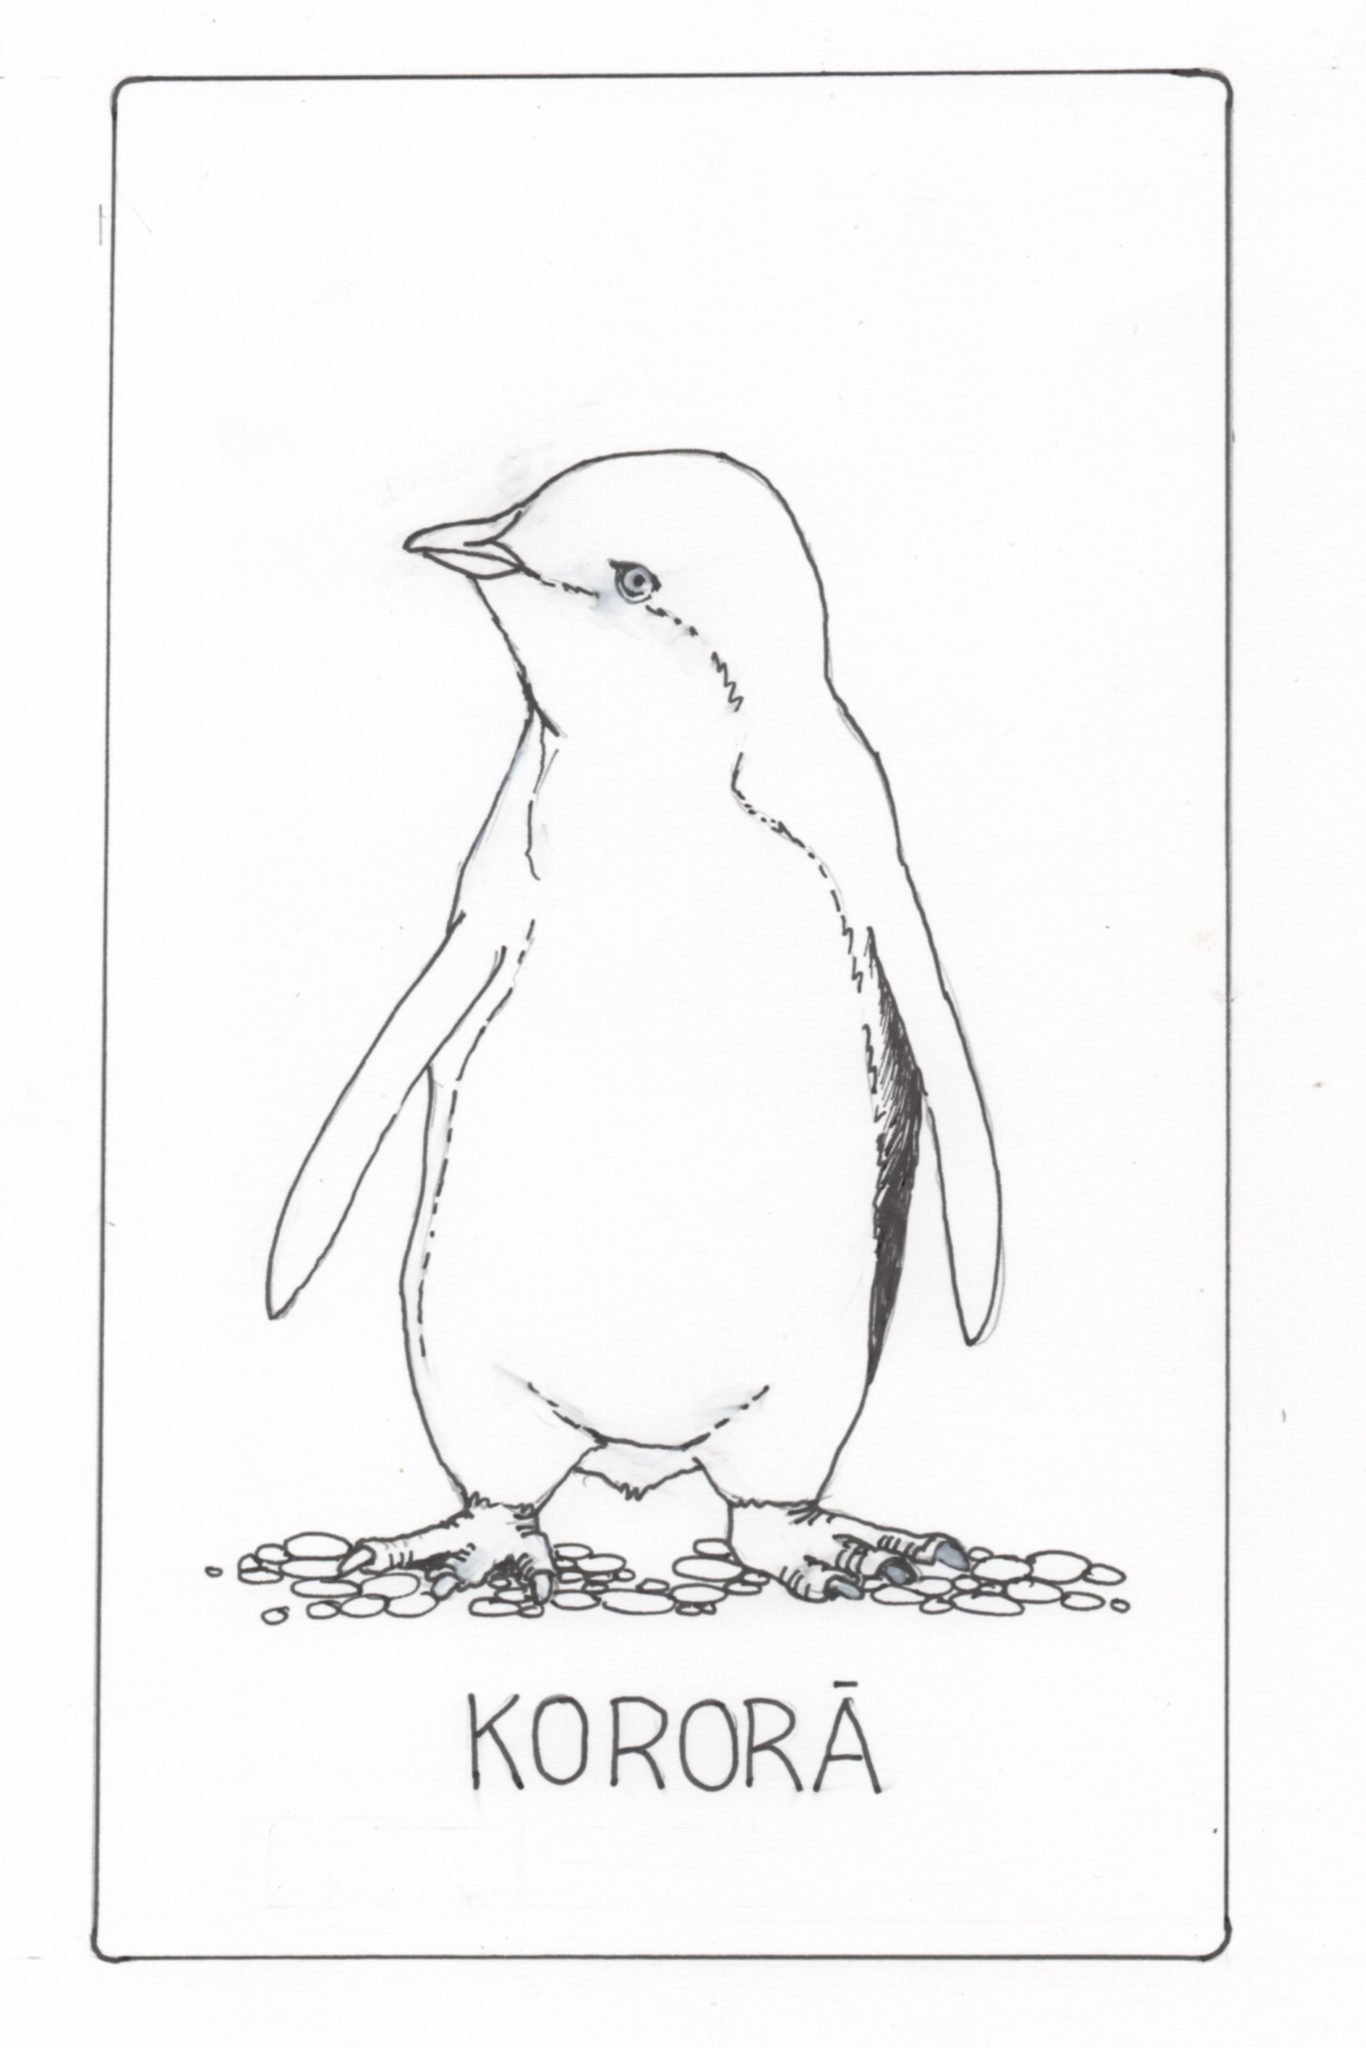 Korora Little Blue Penguin by Jeanette Goode